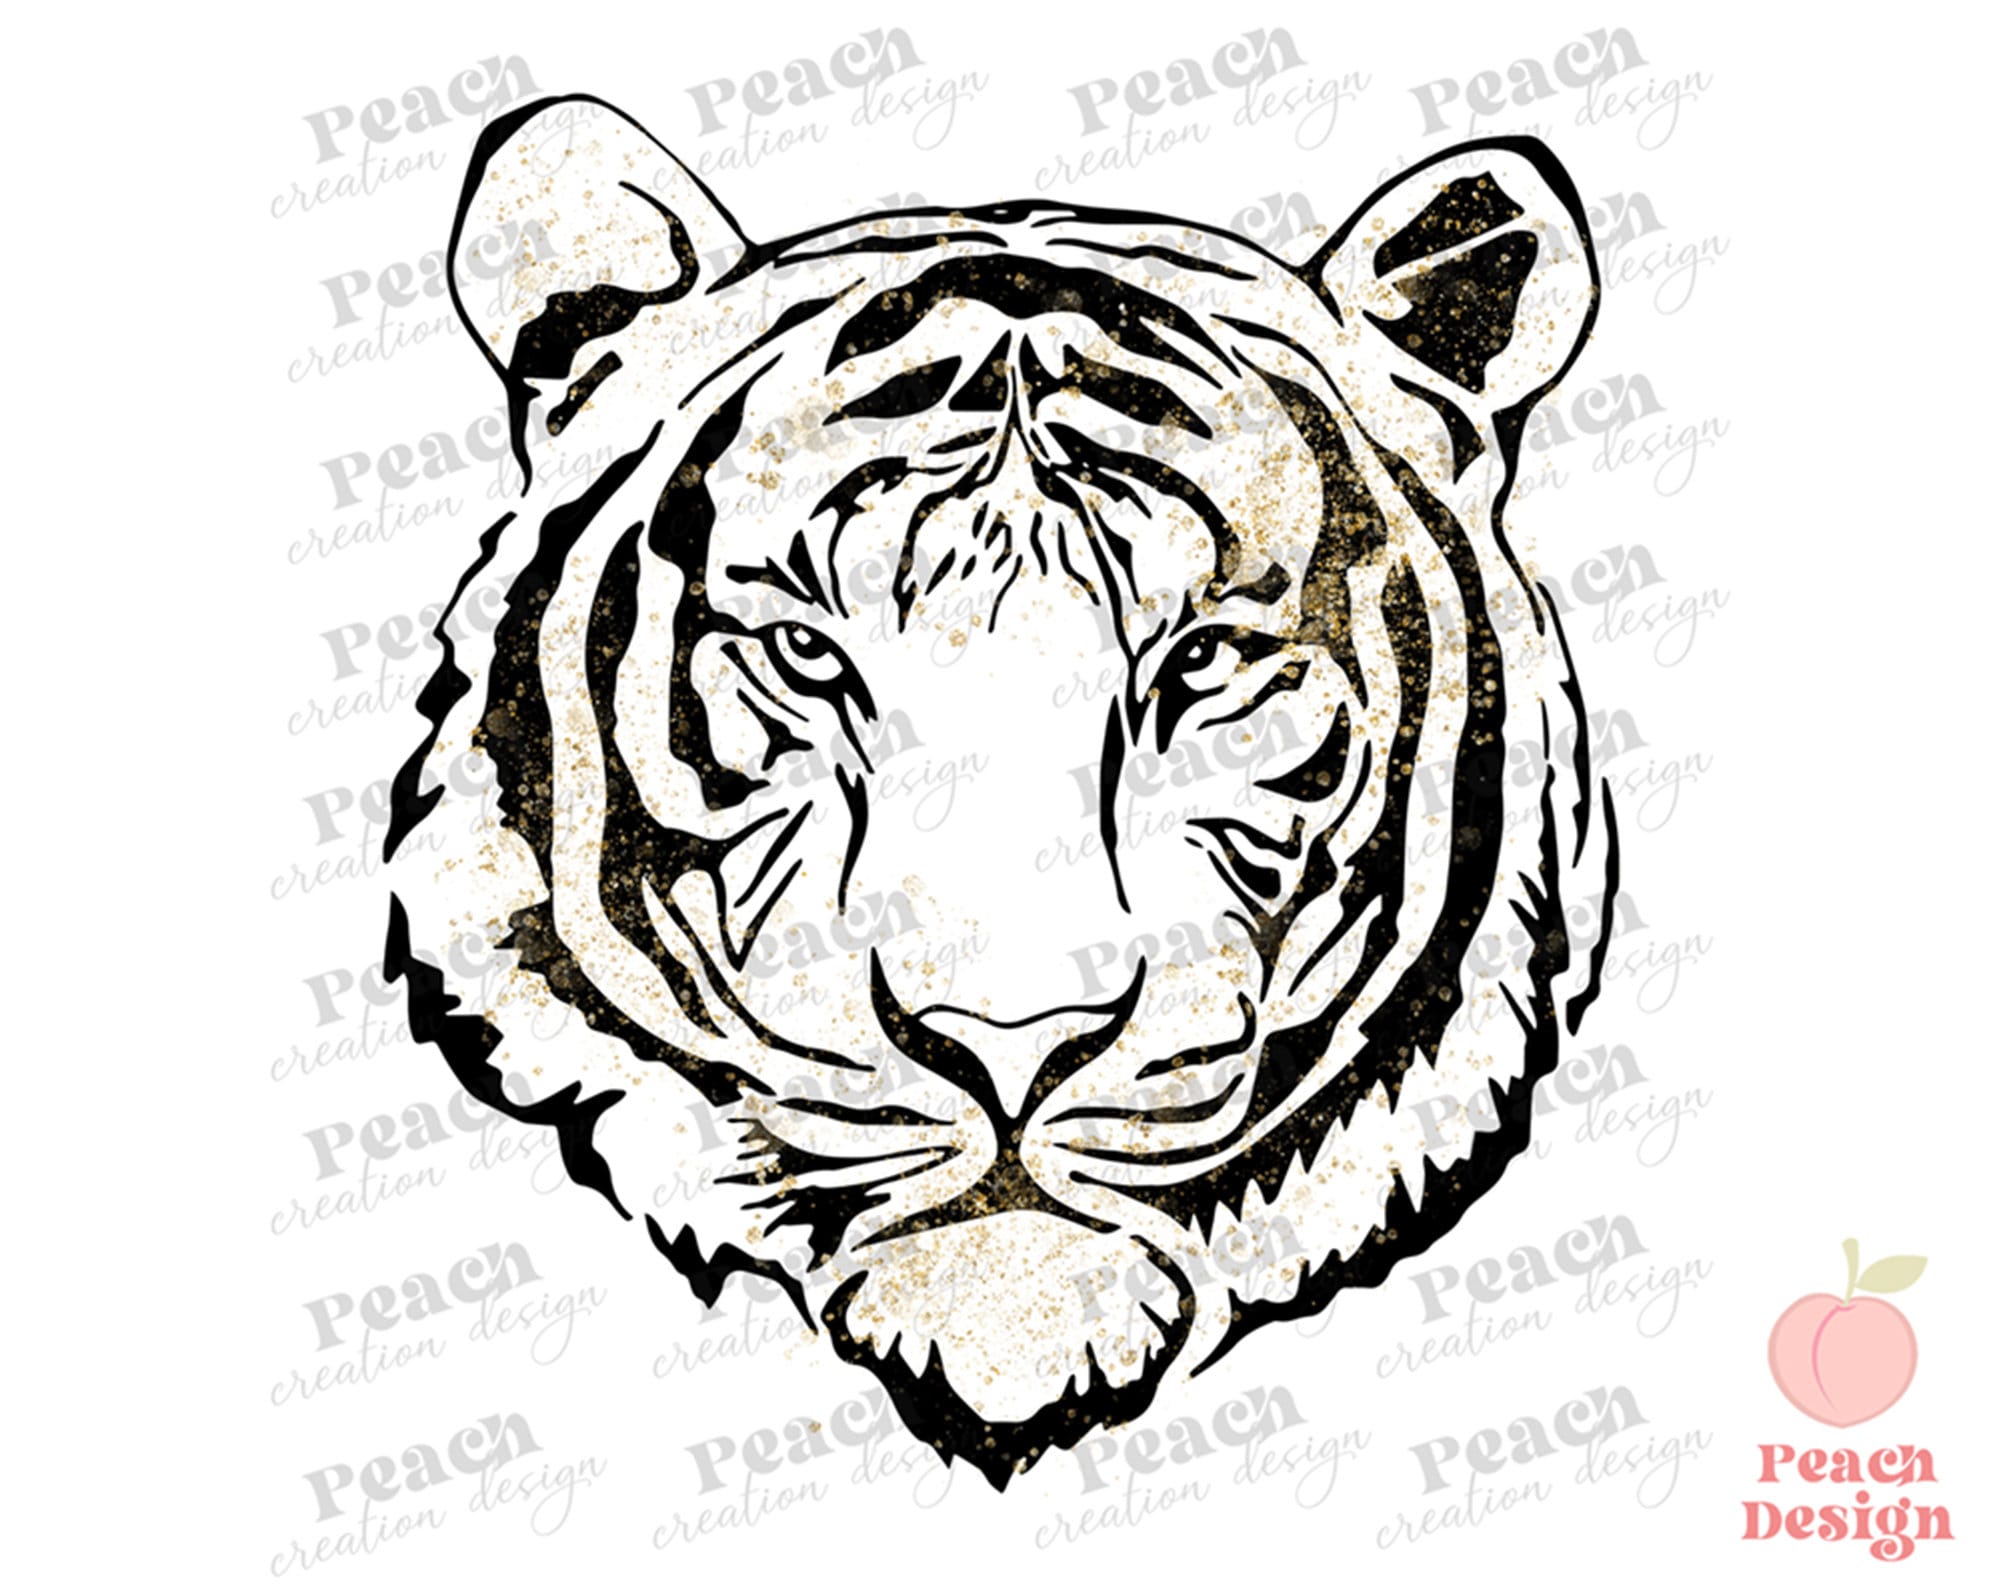 MOJOKO - Year of the tiger  Abstract artwork, Comic art, Poster wall